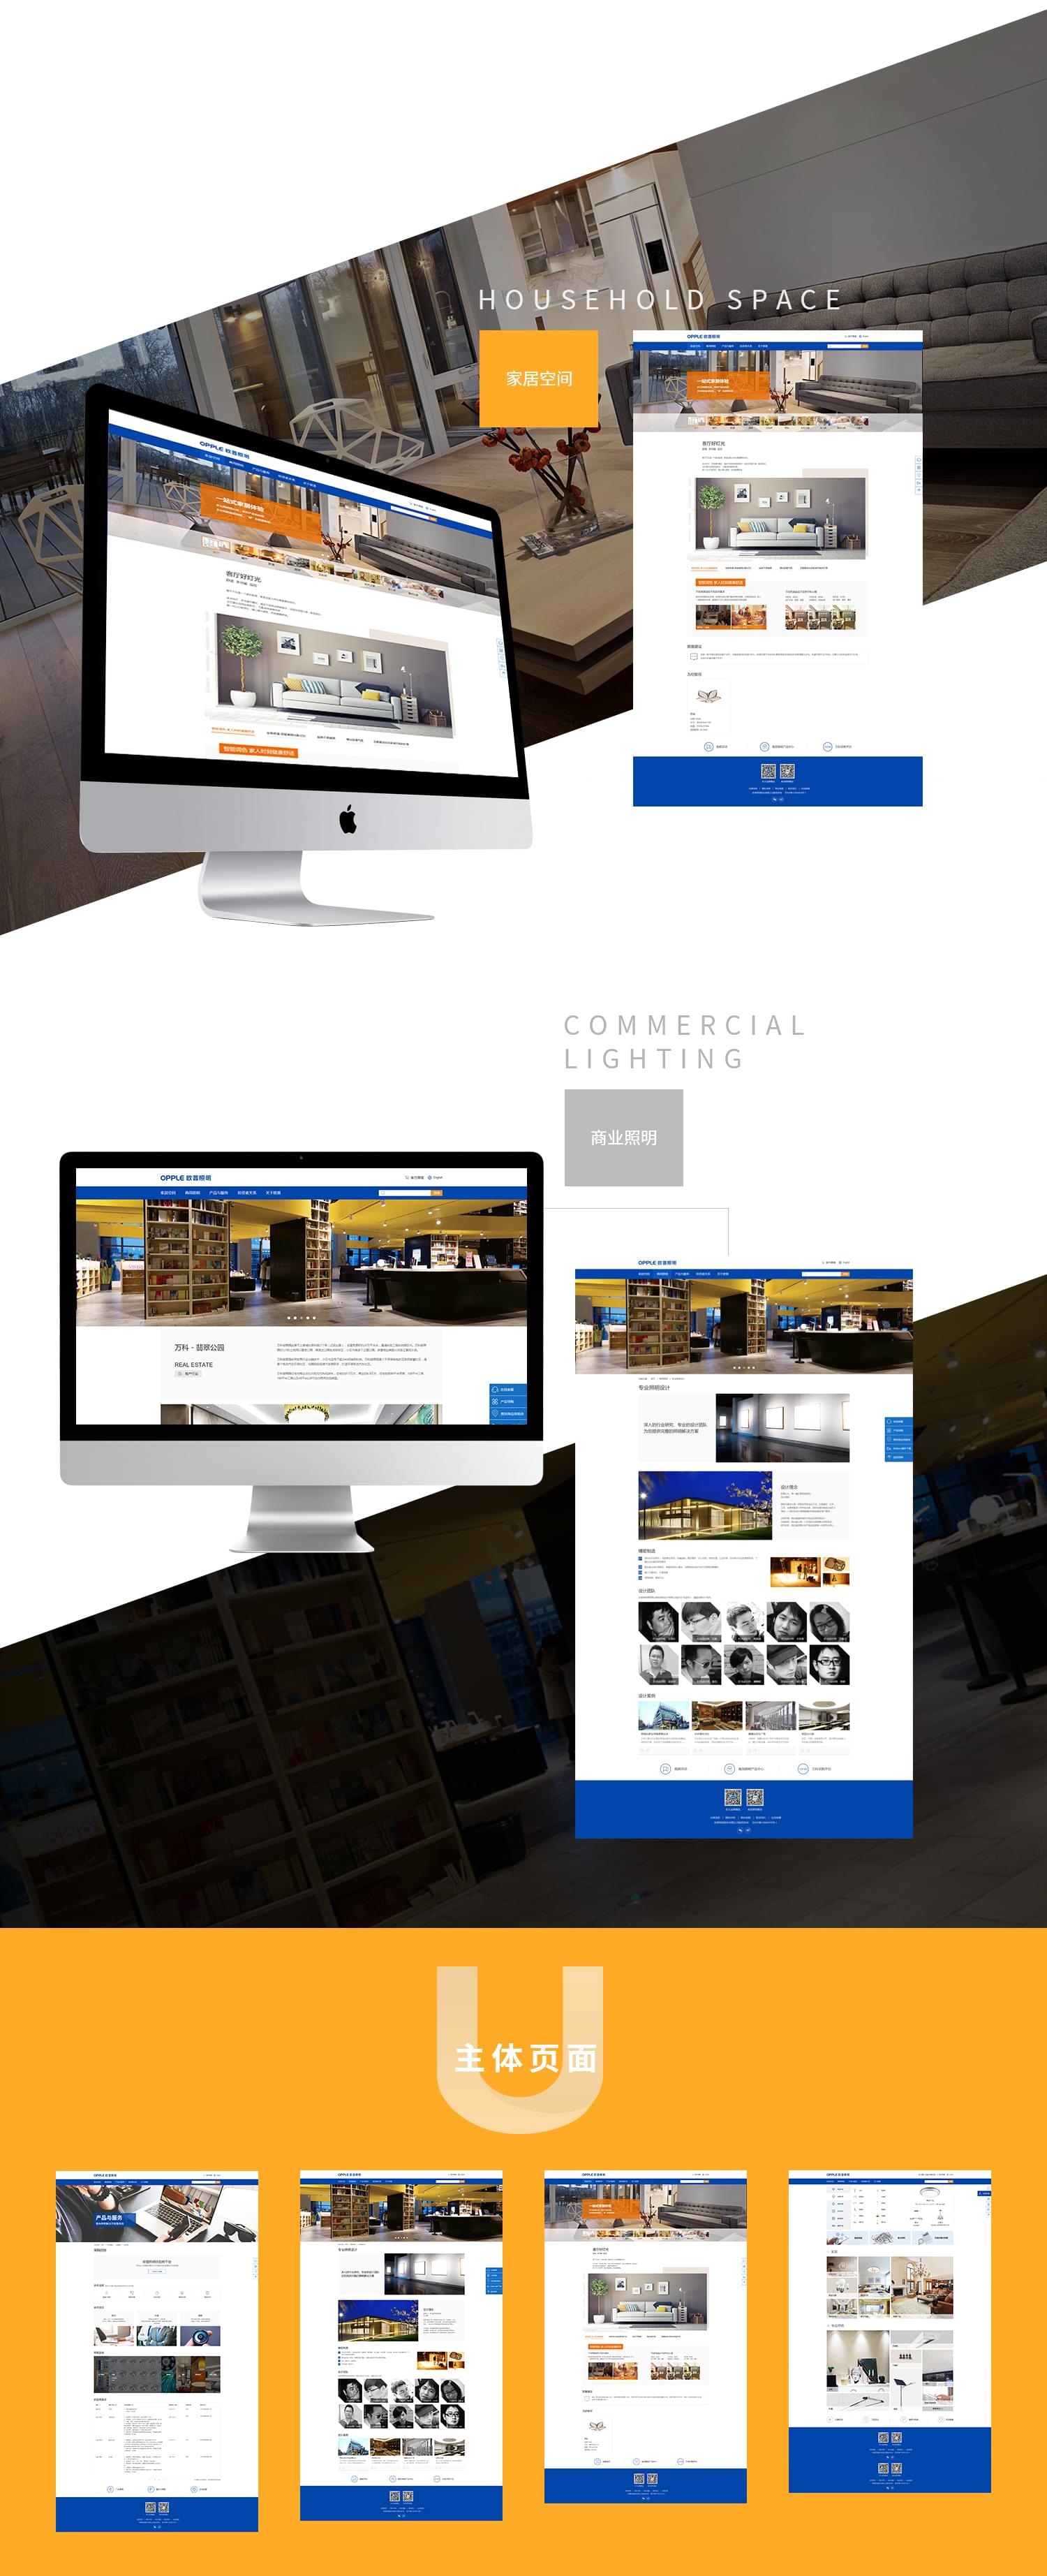 欧普照明网站建设-新媒体营销,新媒体广告公司,上海网络营销,微信代运营,高端网站建设,网站建设公司